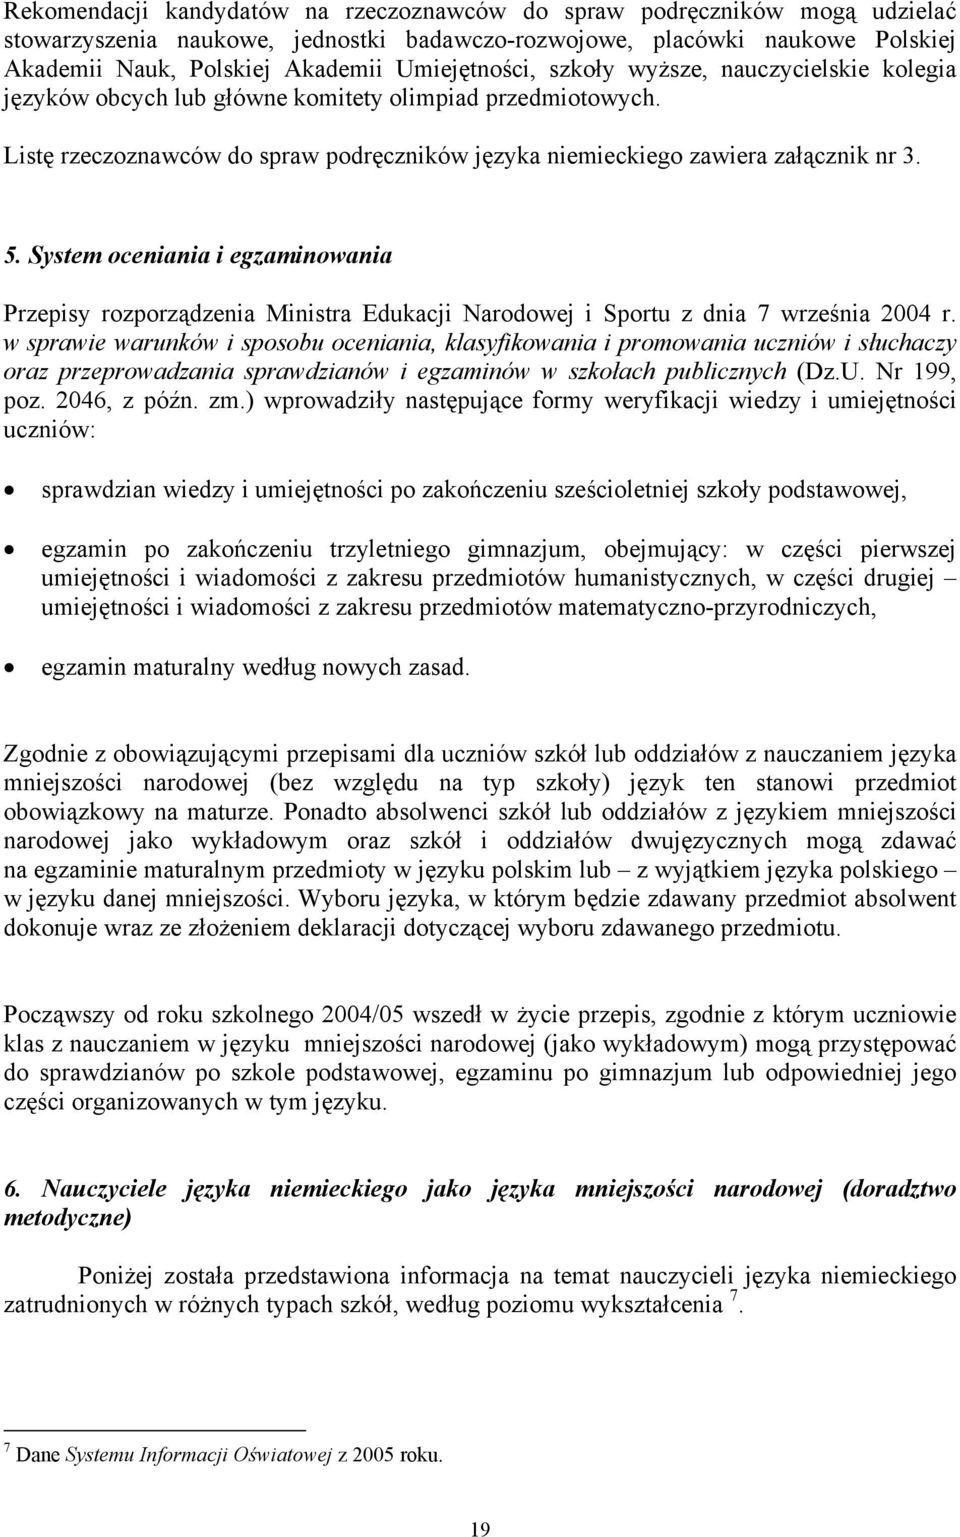 System oceniania i egzaminowania Przepisy rozporządzenia Ministra Edukacji Narodowej i Sportu z dnia 7 września 2004 r.